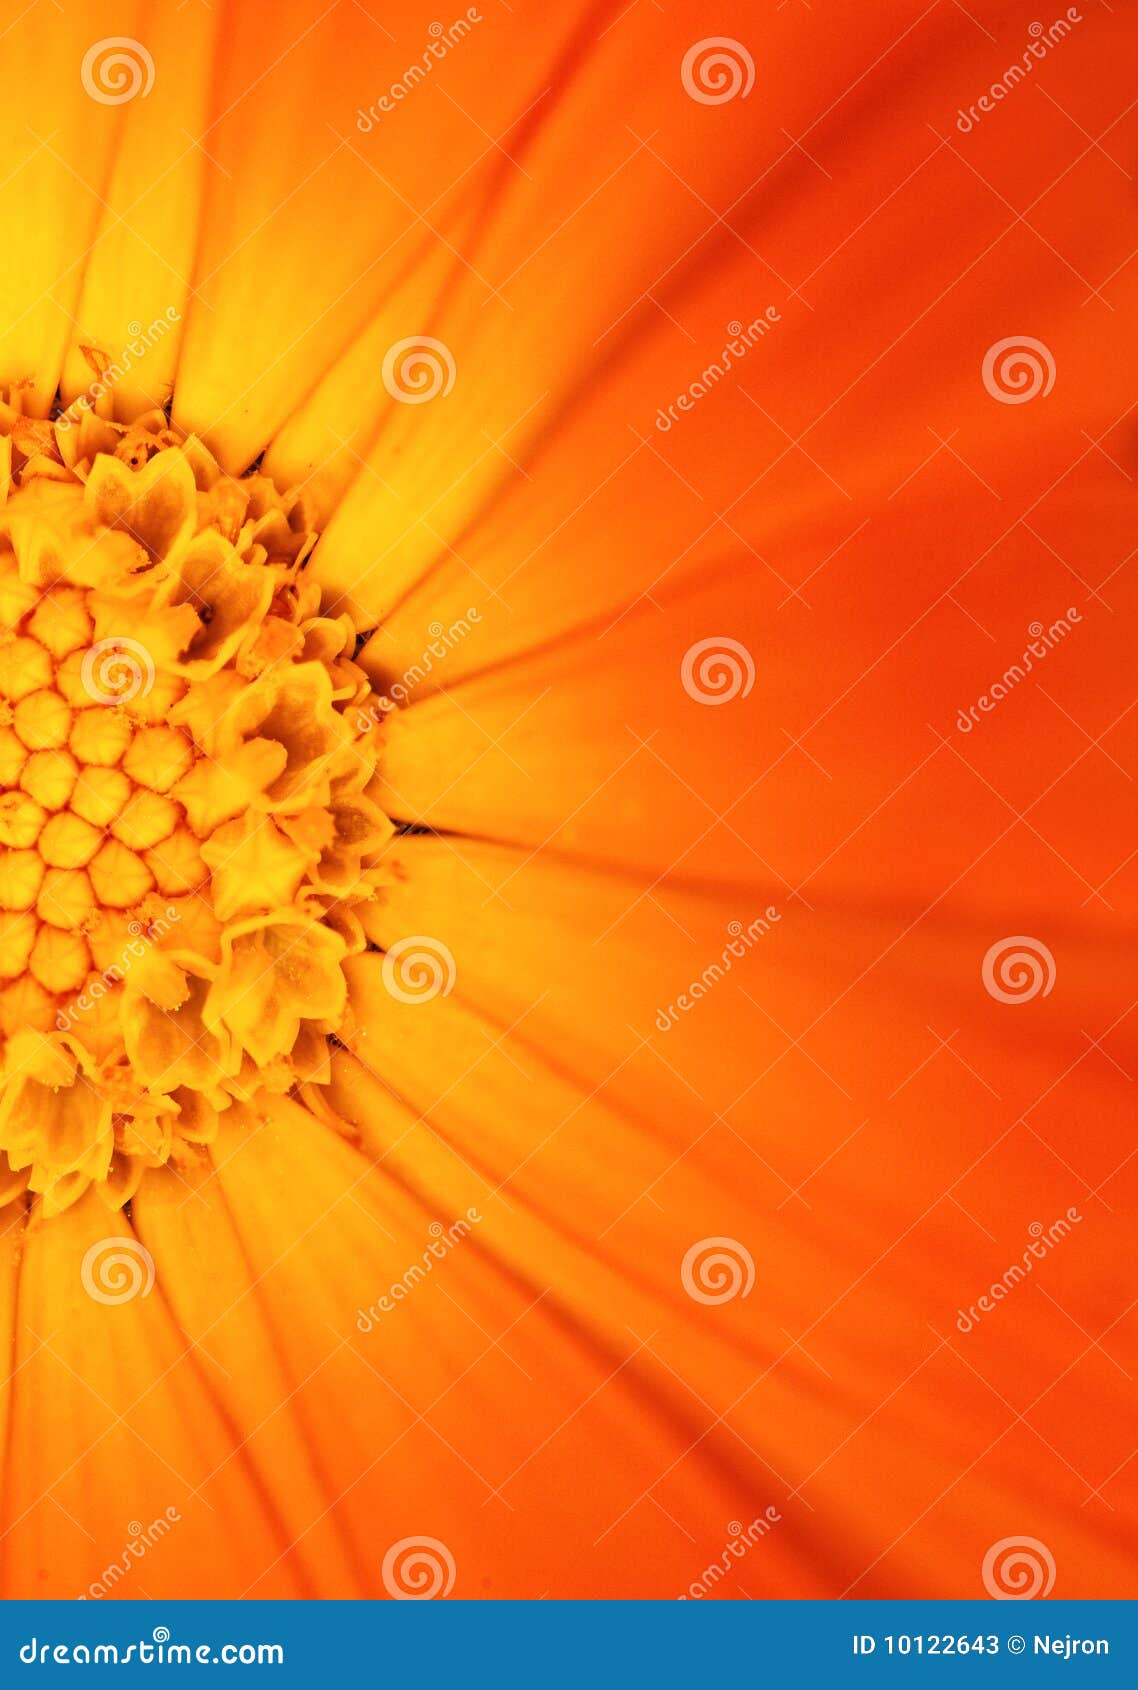 Schöne orange Blume. Abbildung einer schönen orange Blume